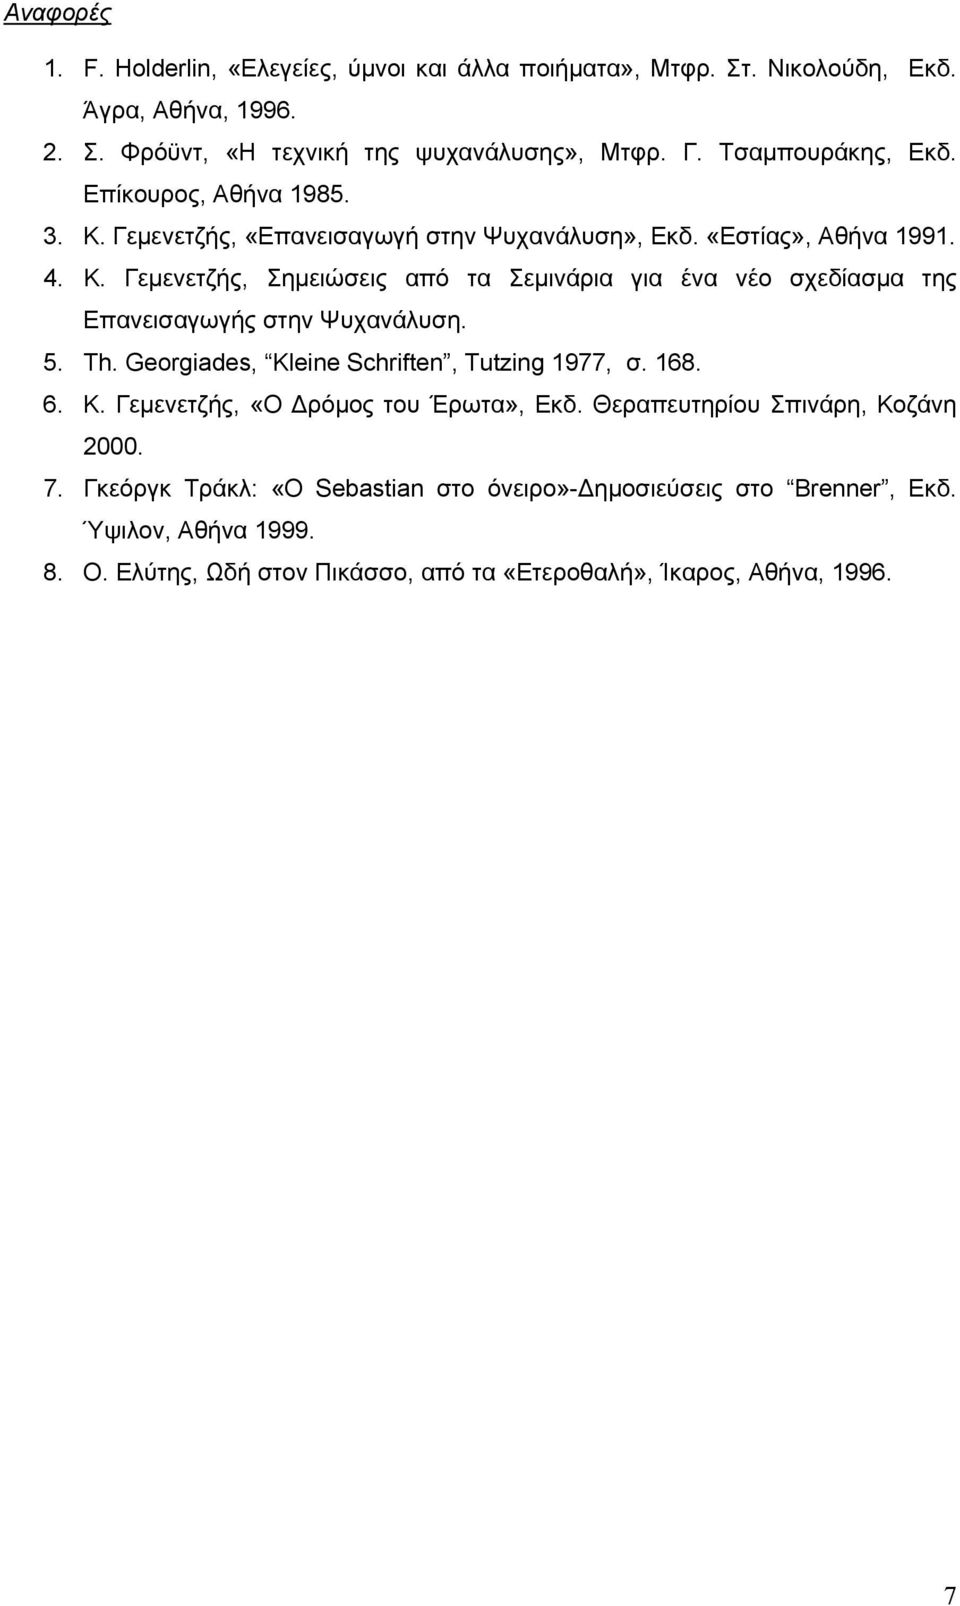 5. Th. Georgiades, Kleine Schriften, Tutzing 1977, σ. 168. 6. Κ. Γεµενετζής, «Ο ρόµος του Έρωτα», Εκδ. Θεραπευτηρίου Σπινάρη, Κοζάνη 2000. 7.